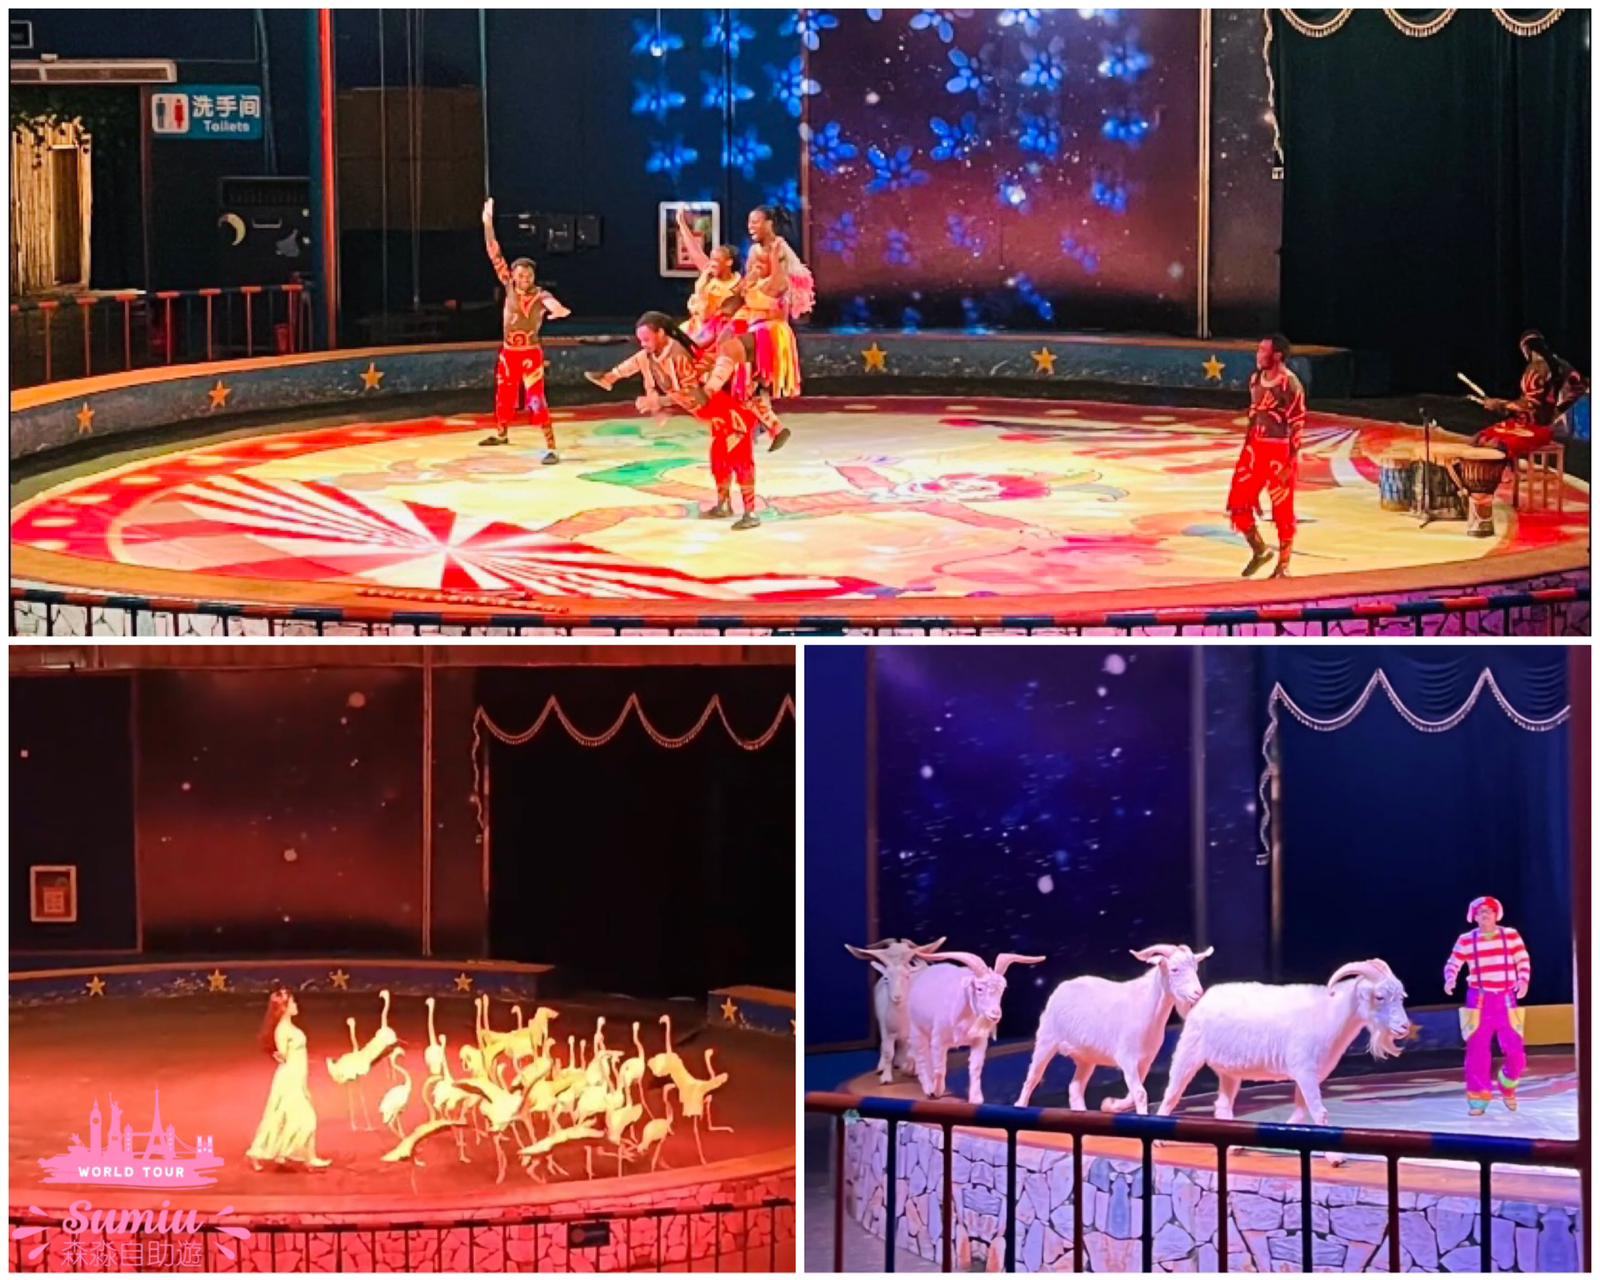 深圳野生動物園馬戲雜技表演、魔術表演、騎馬、跳舞，人類和動物一起合作表演，看起來動物沒太過操勞，一定要看！